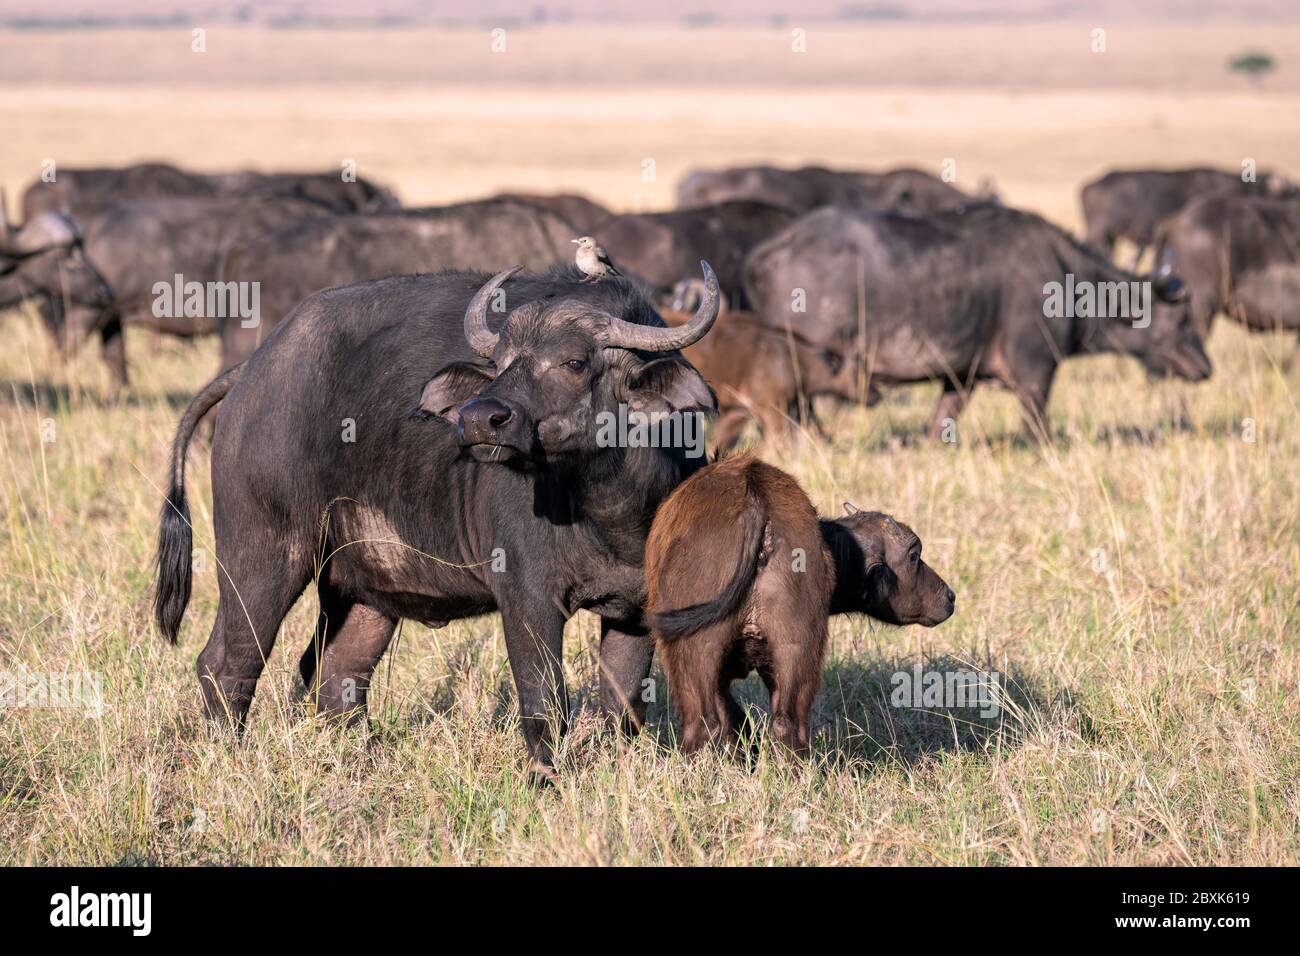 Mère de buffle du cap avec un jeune veau près de ses côtés, le reste du troupeau montrant en arrière-plan. Photo prise à Masai Mara, Kenya. Banque D'Images